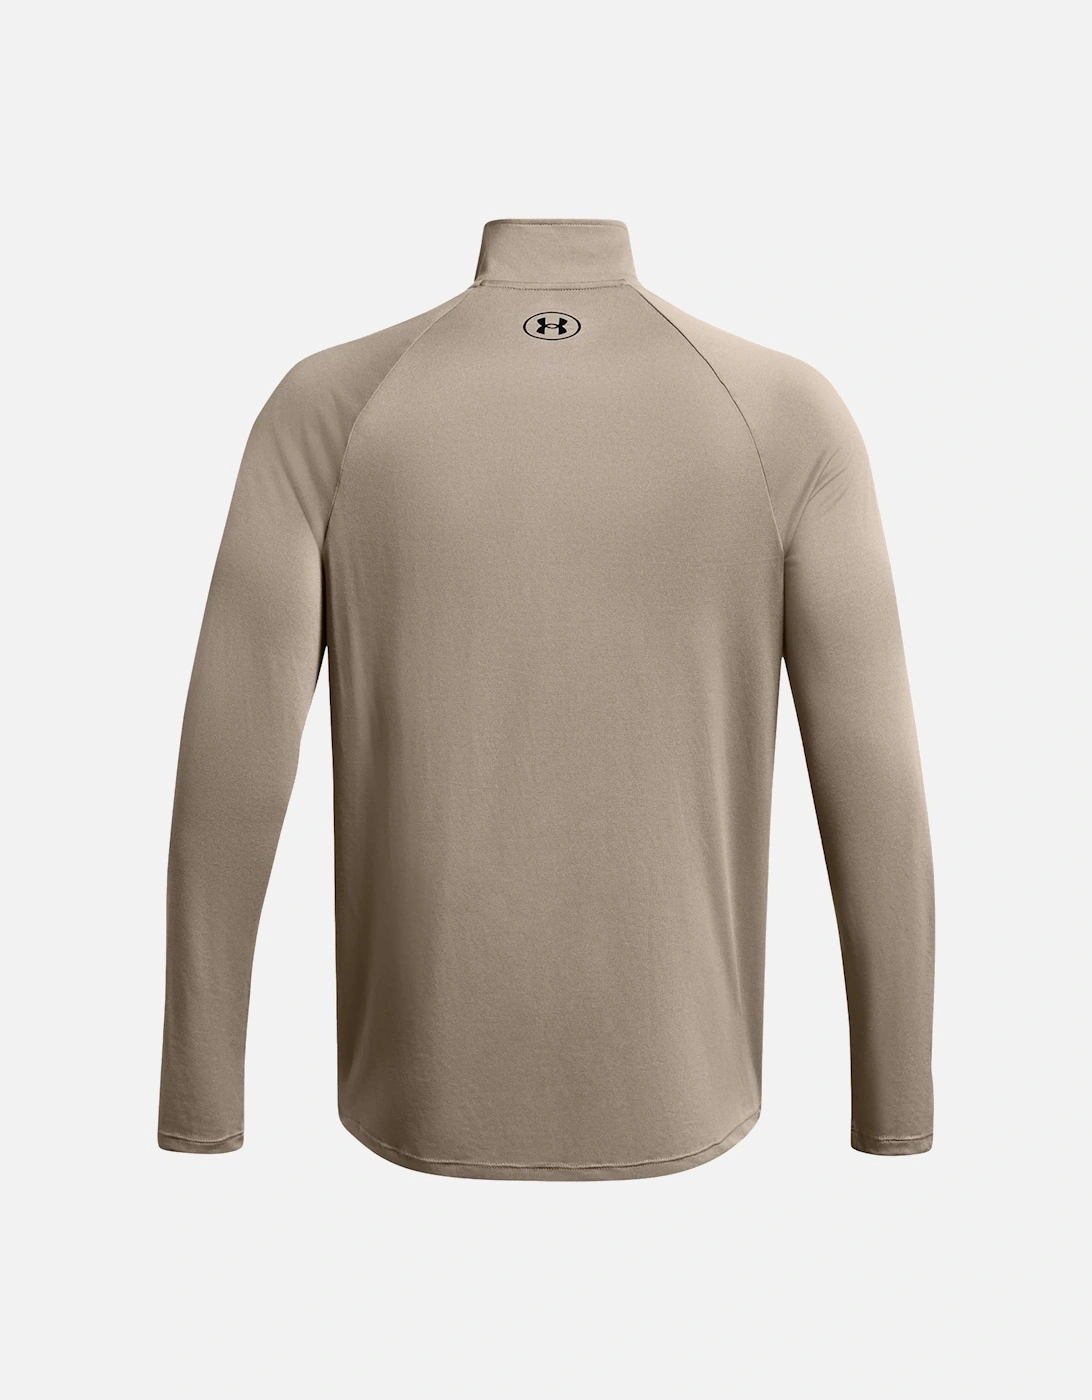 Mens 2.0 Half Zip Sweatshirt (Taupe)